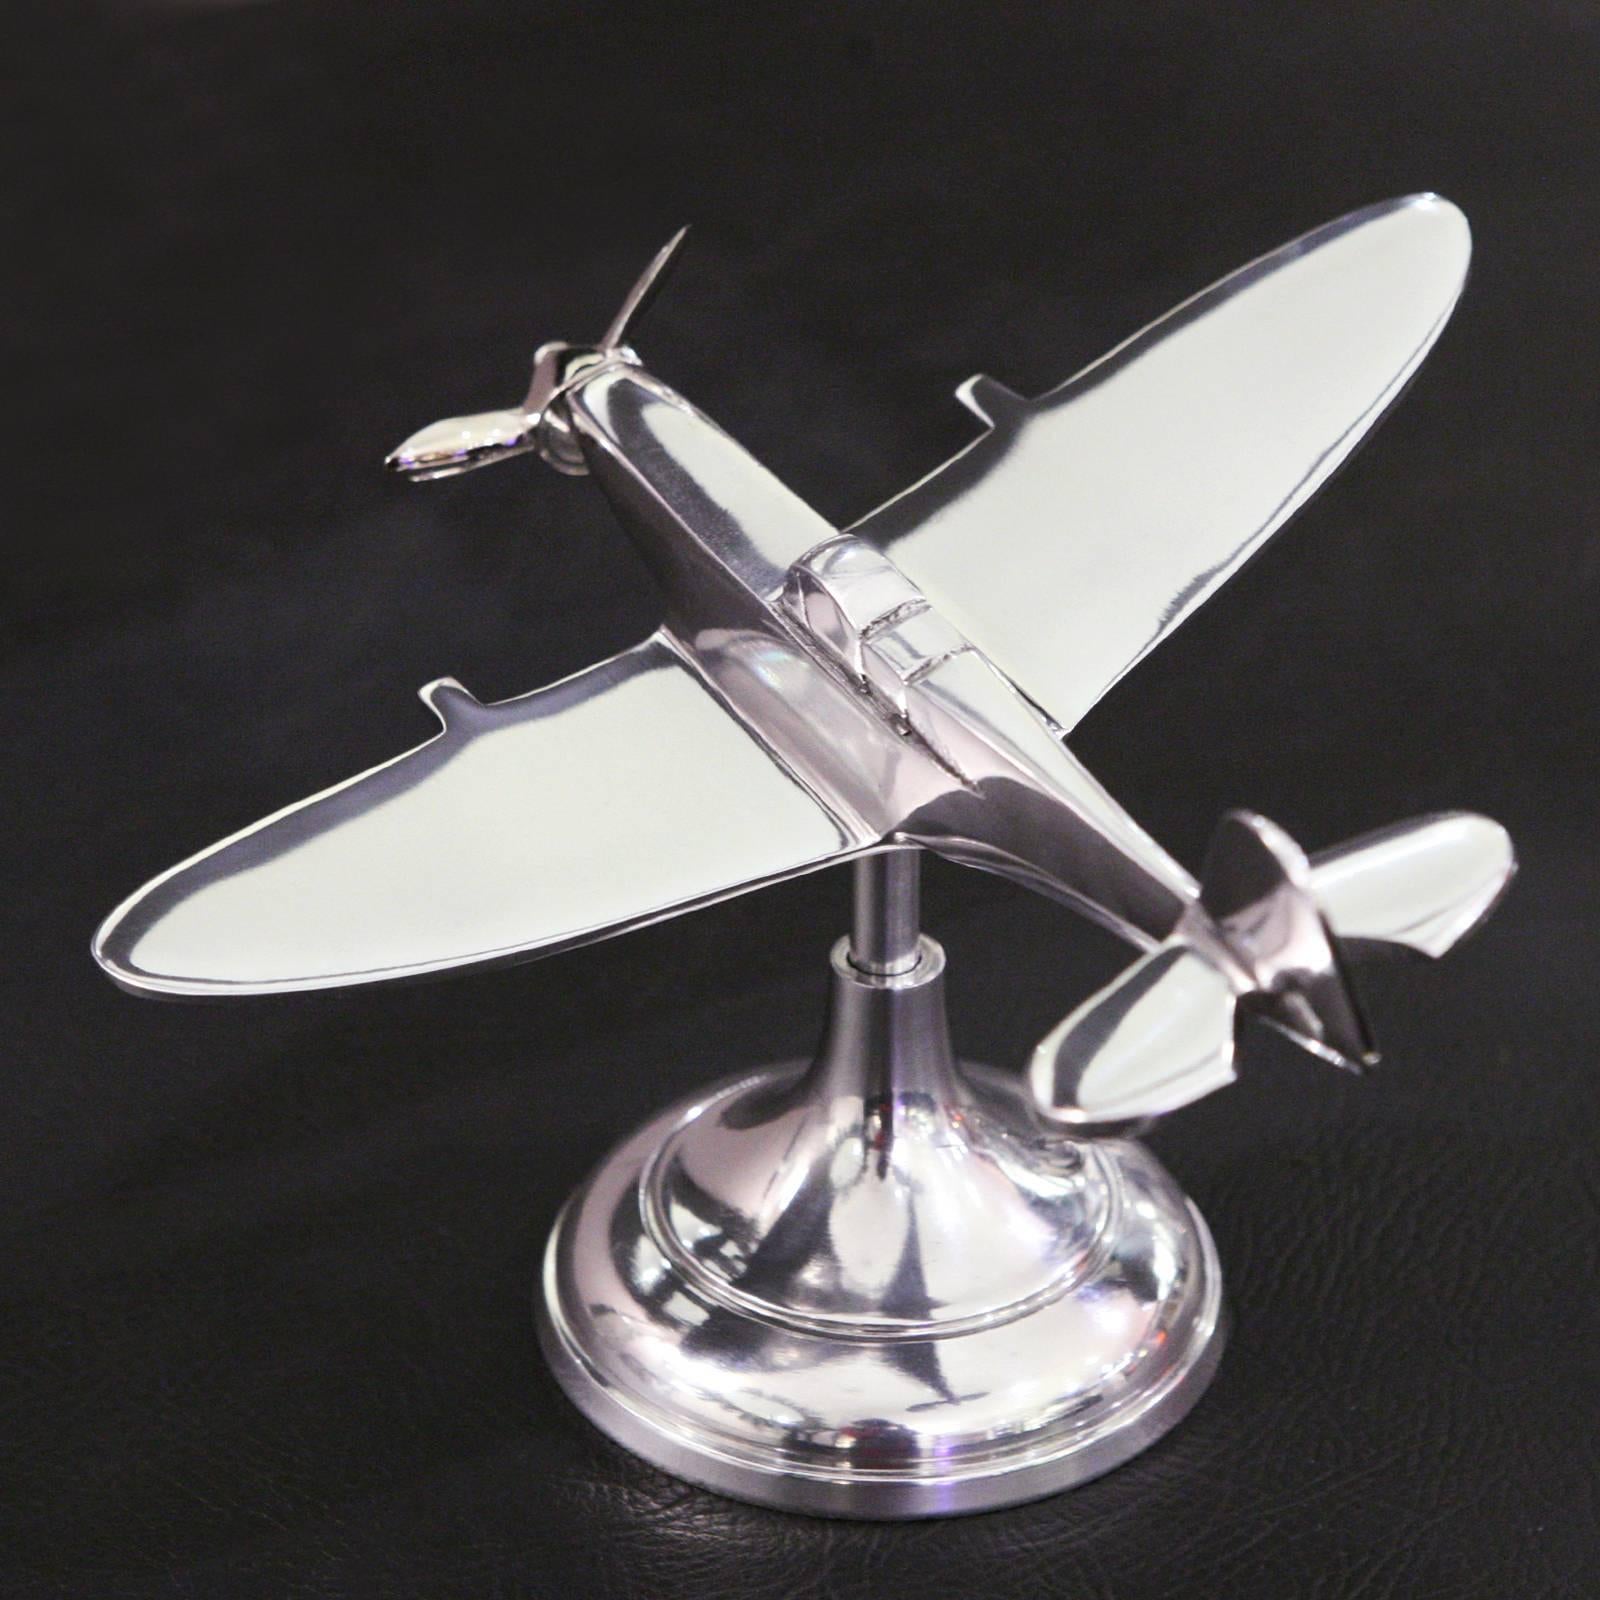 spitfire model aluminium